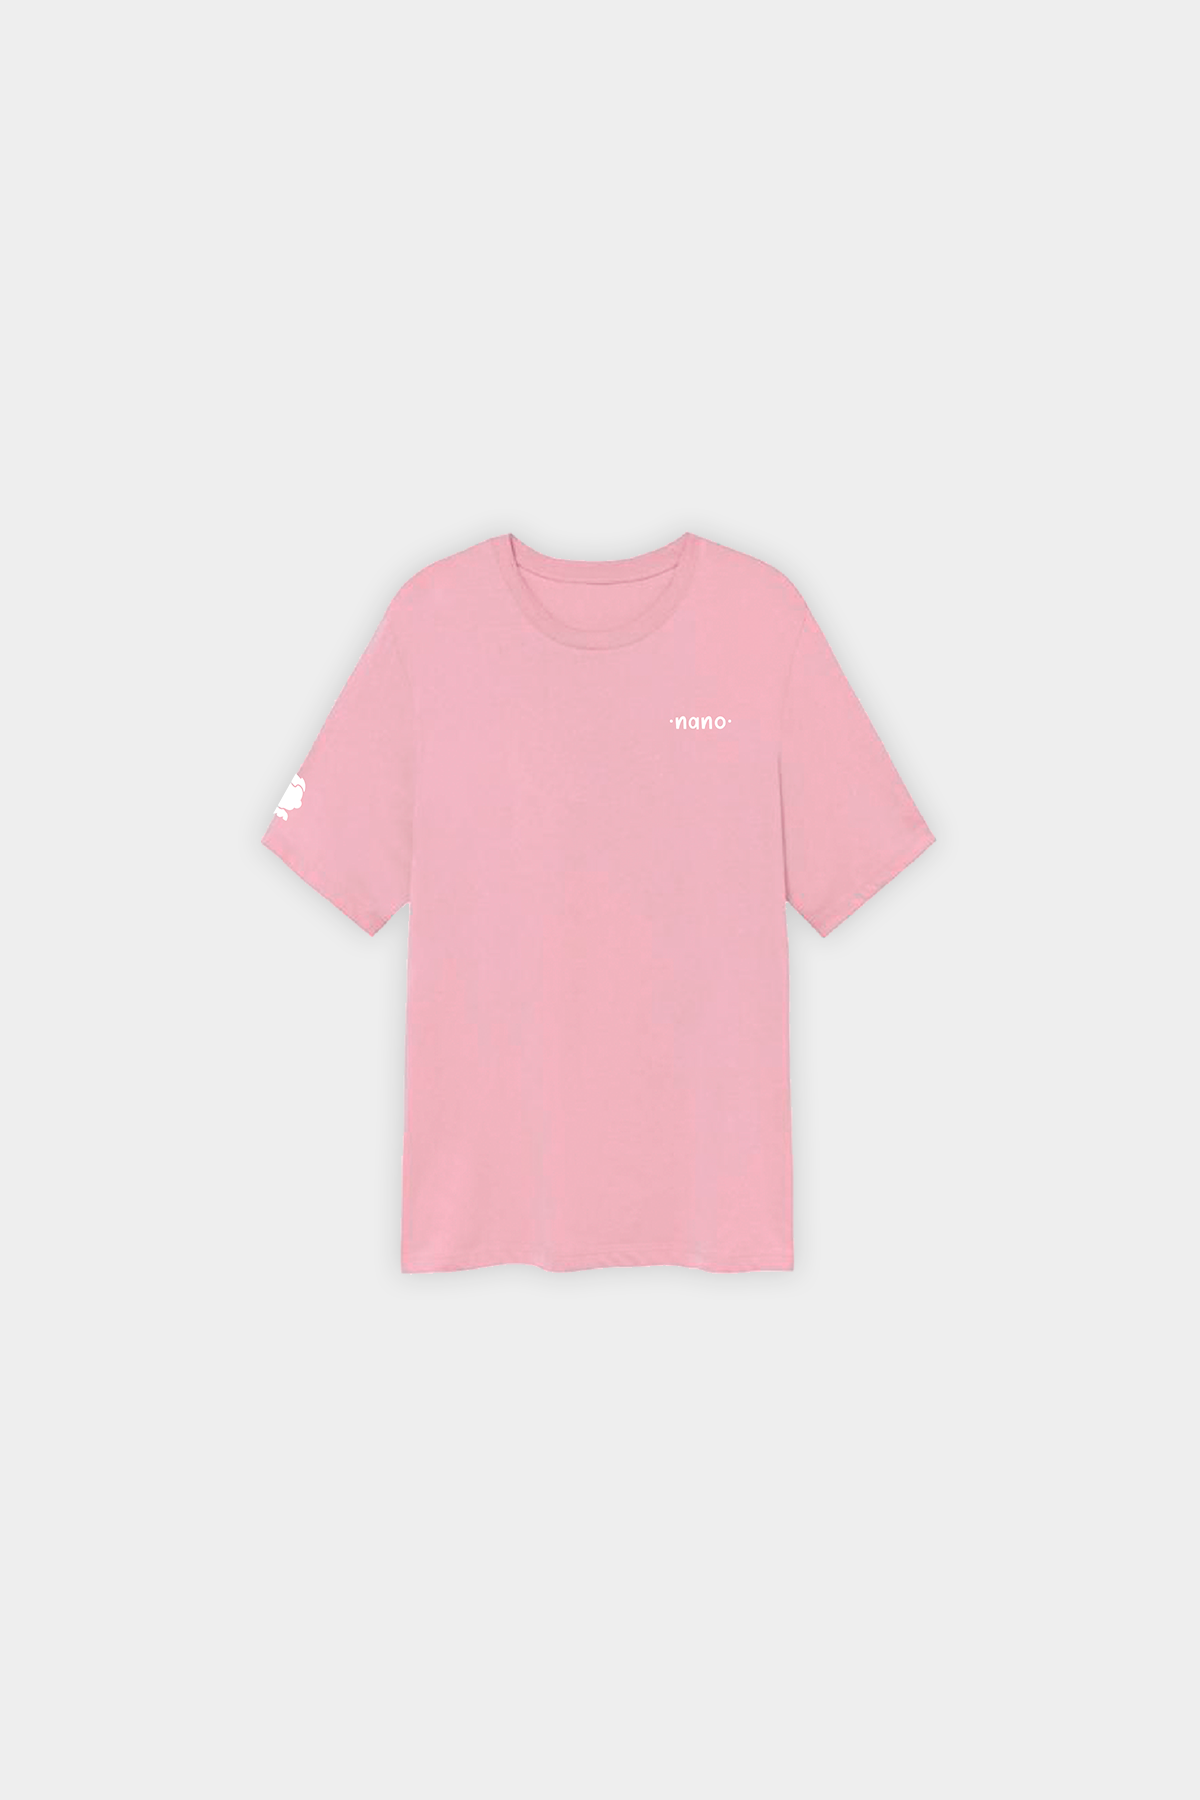 Camiseta rosa png